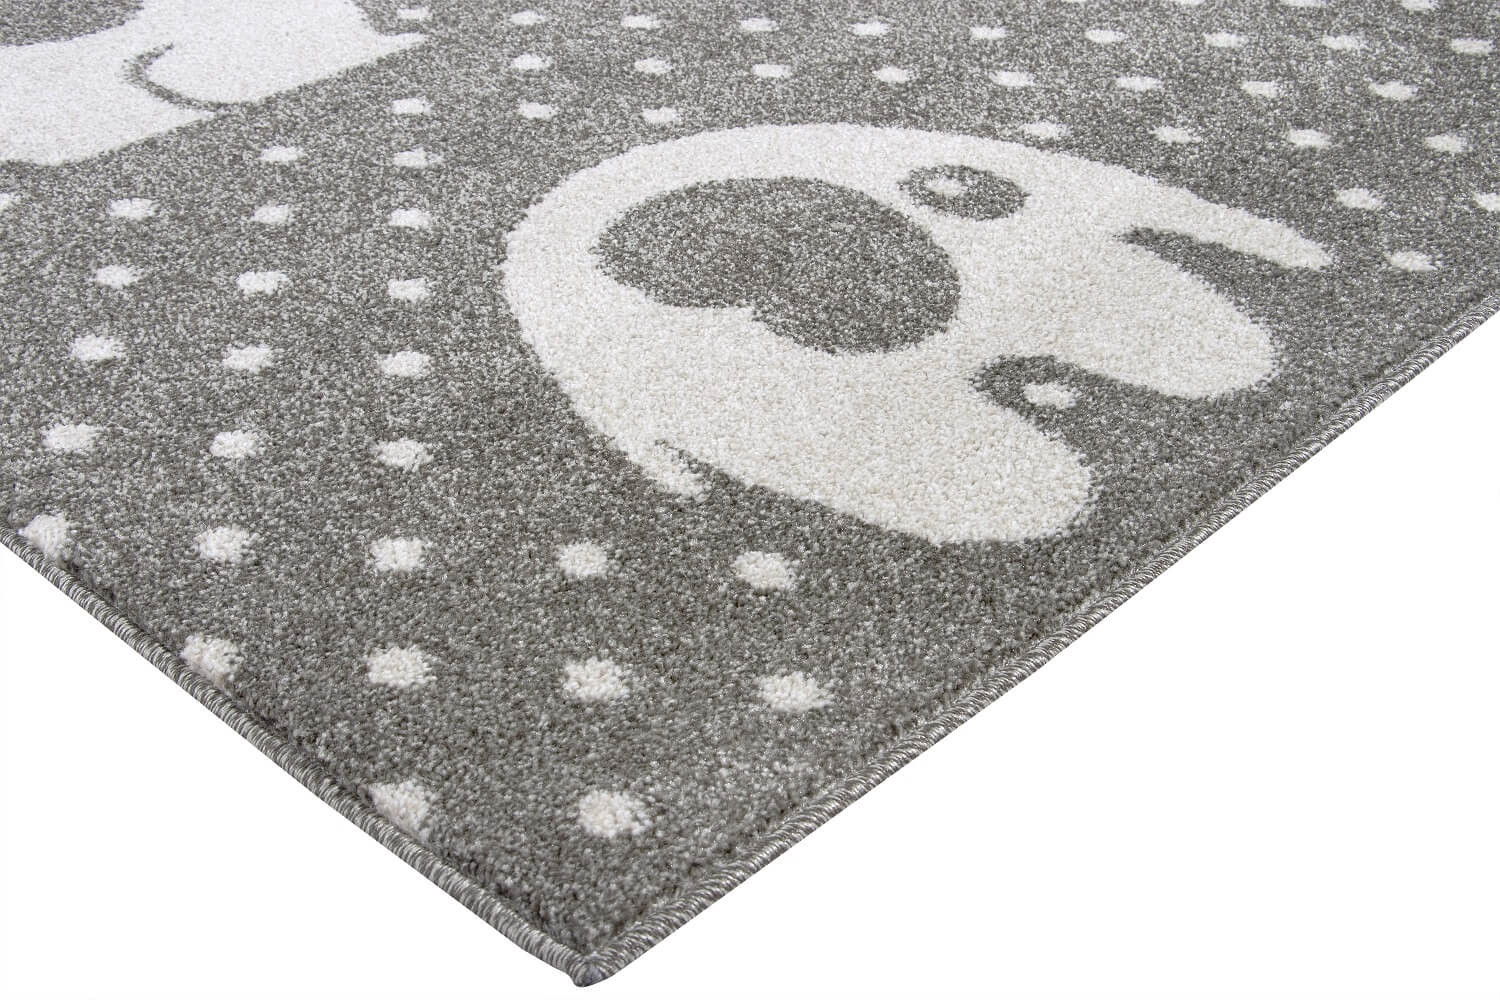 Hnedý dekoratívny koberec Safari pre deti s béžovými slonmi a bodkami - Carpetforyou obrázok 3